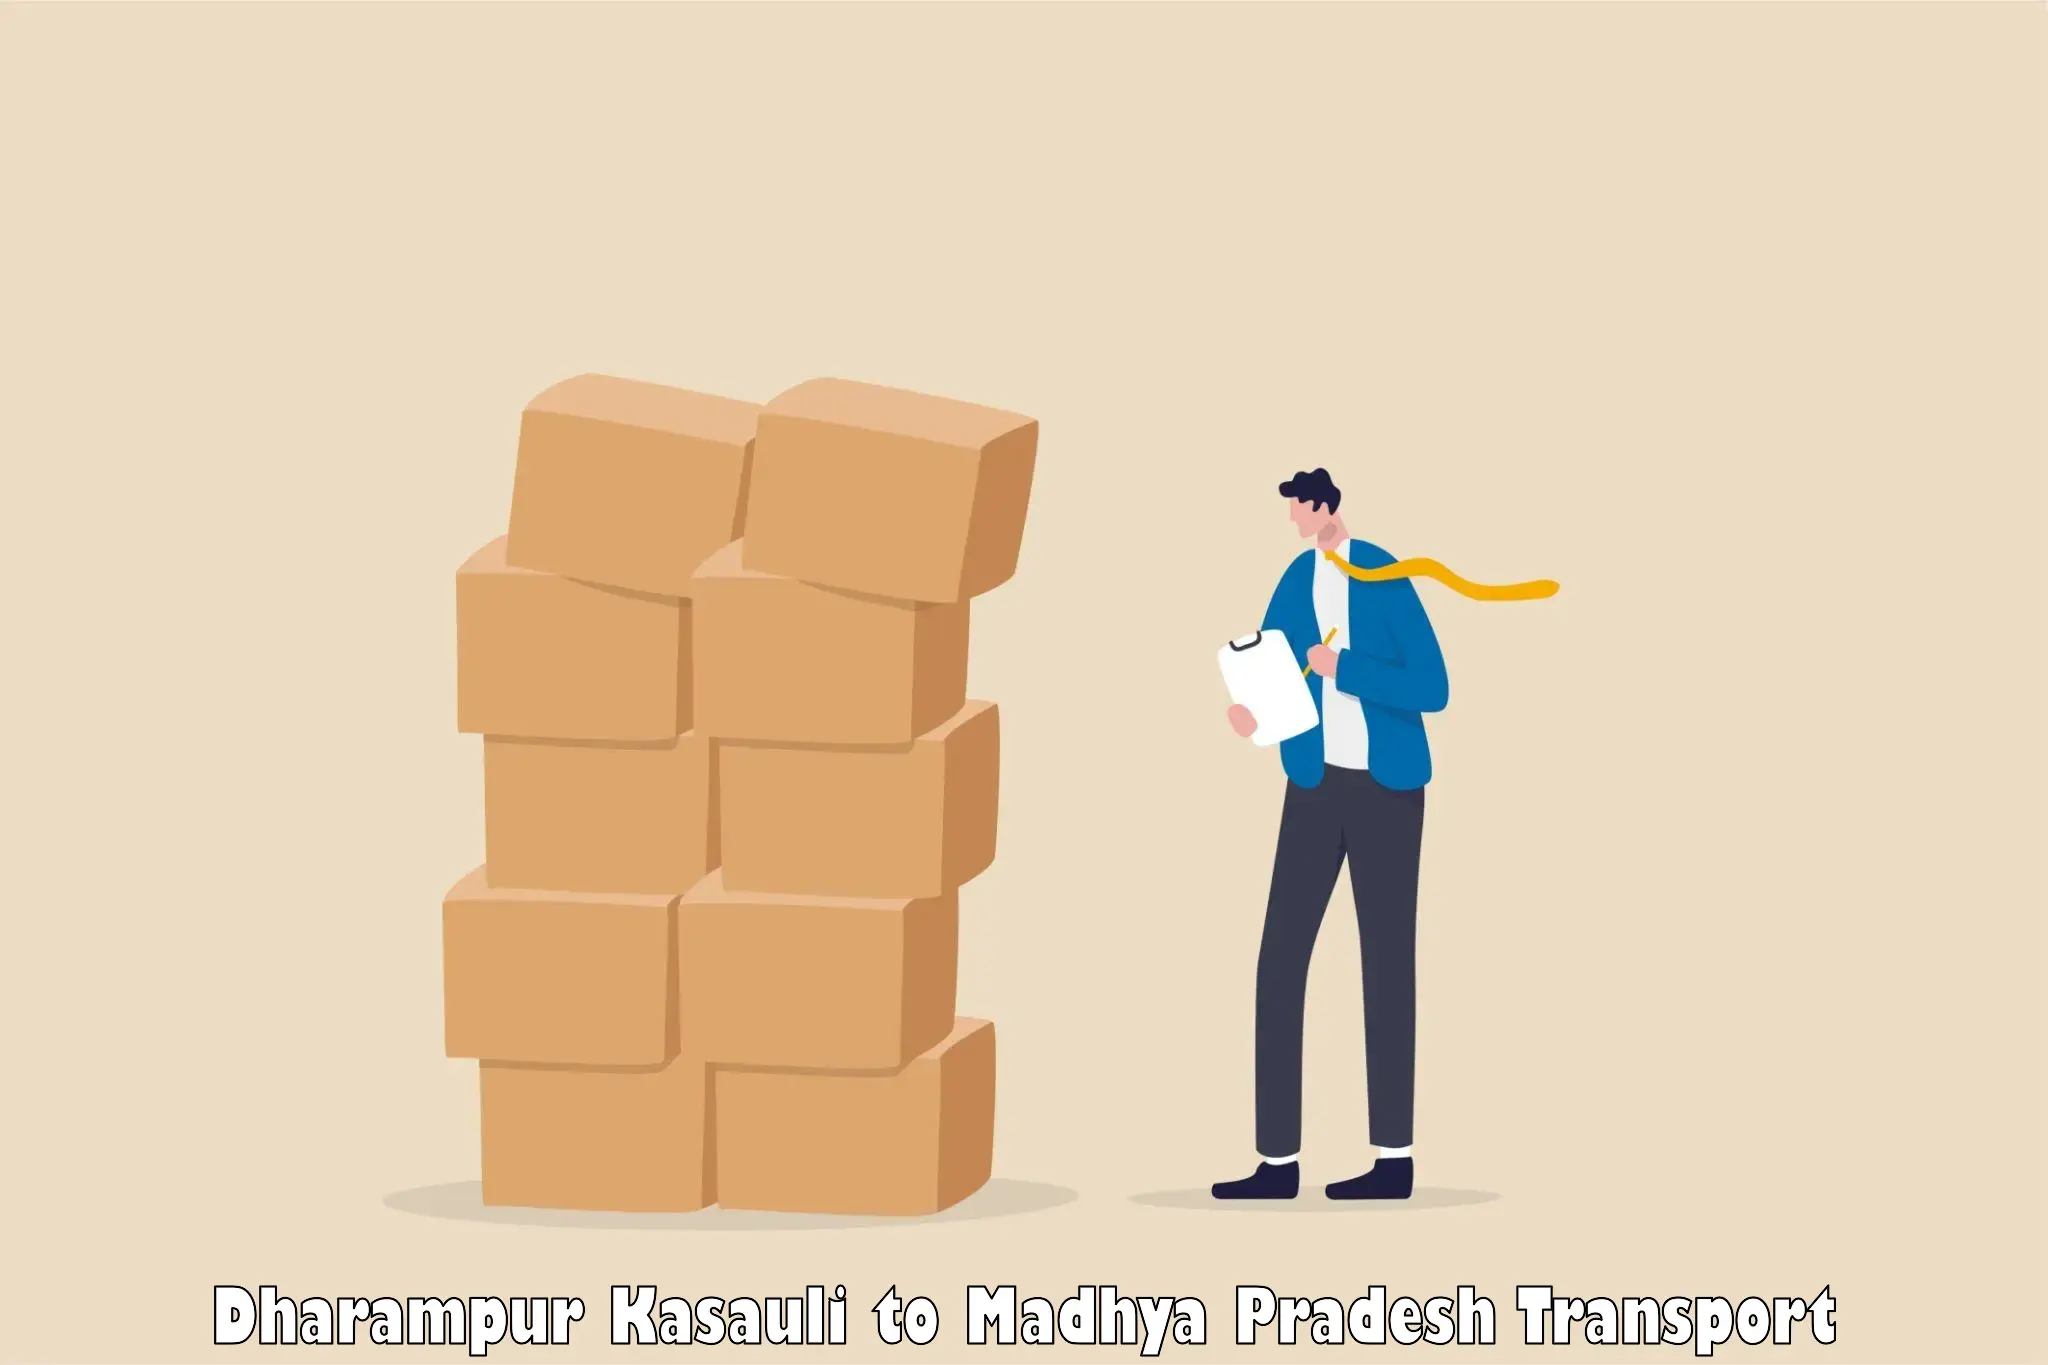 Shipping services Dharampur Kasauli to Sitamau